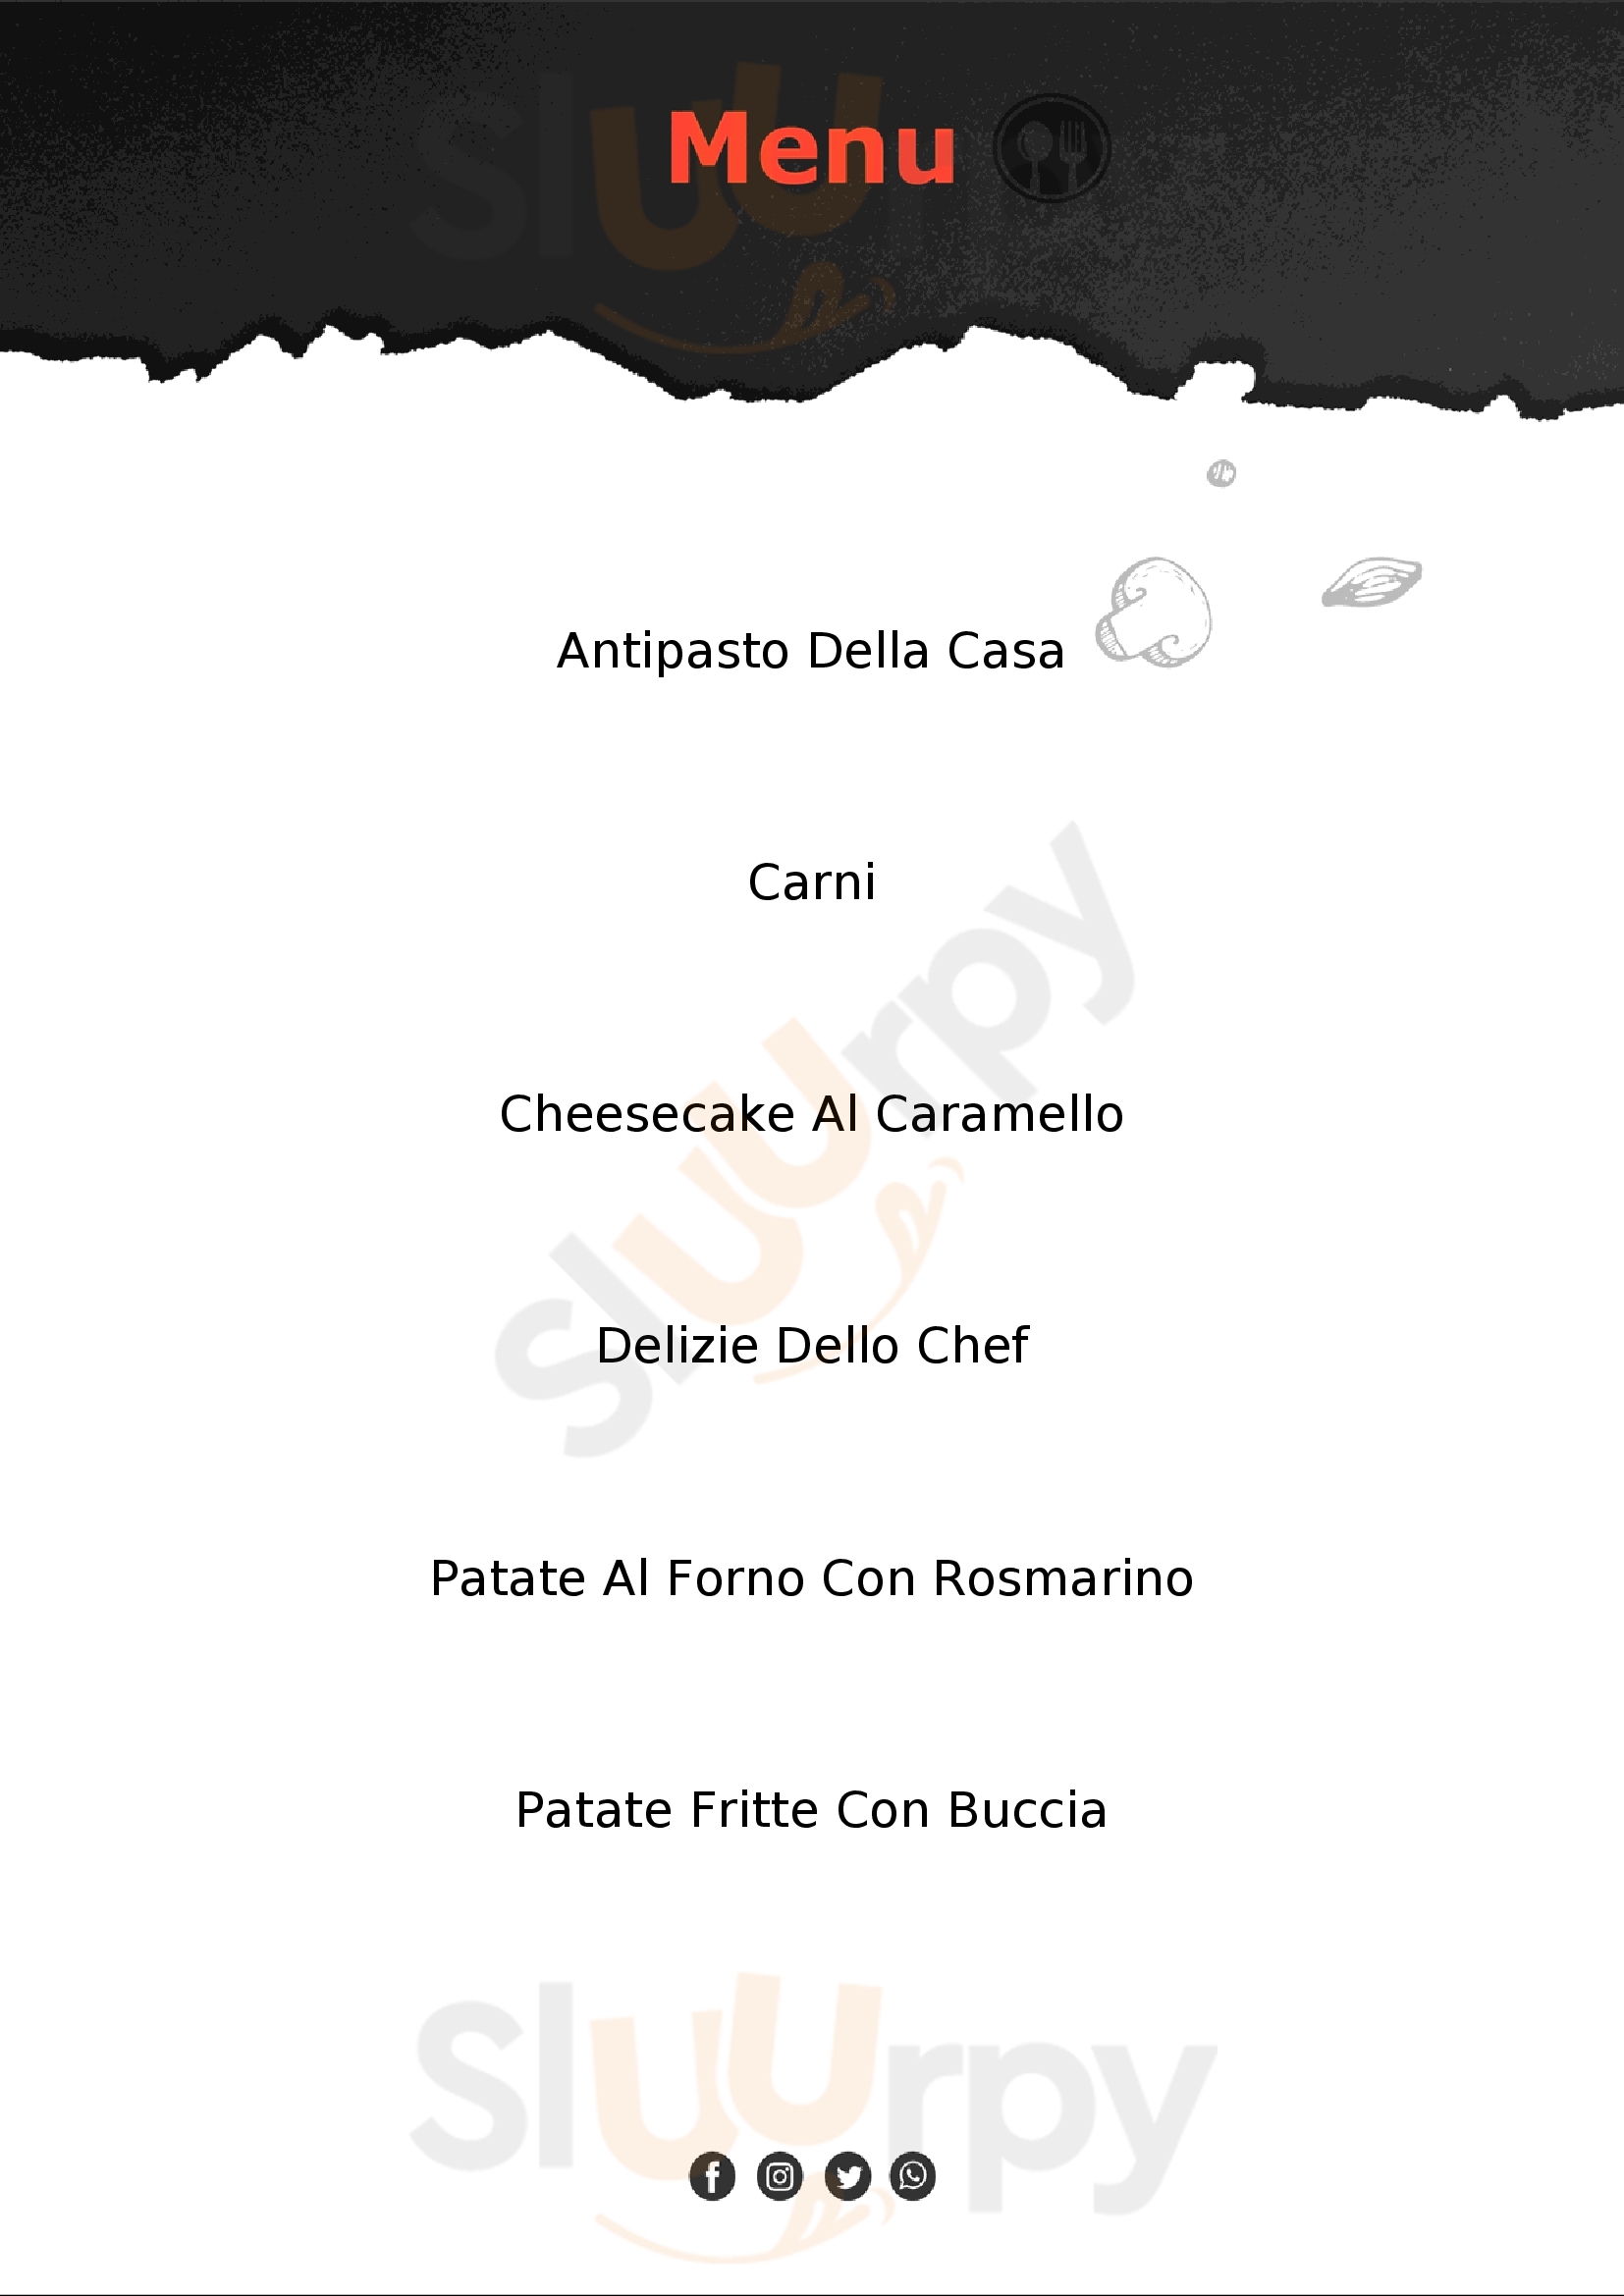 Donato Il Macellaio - Bistrot delle Carni Salerno menù 1 pagina